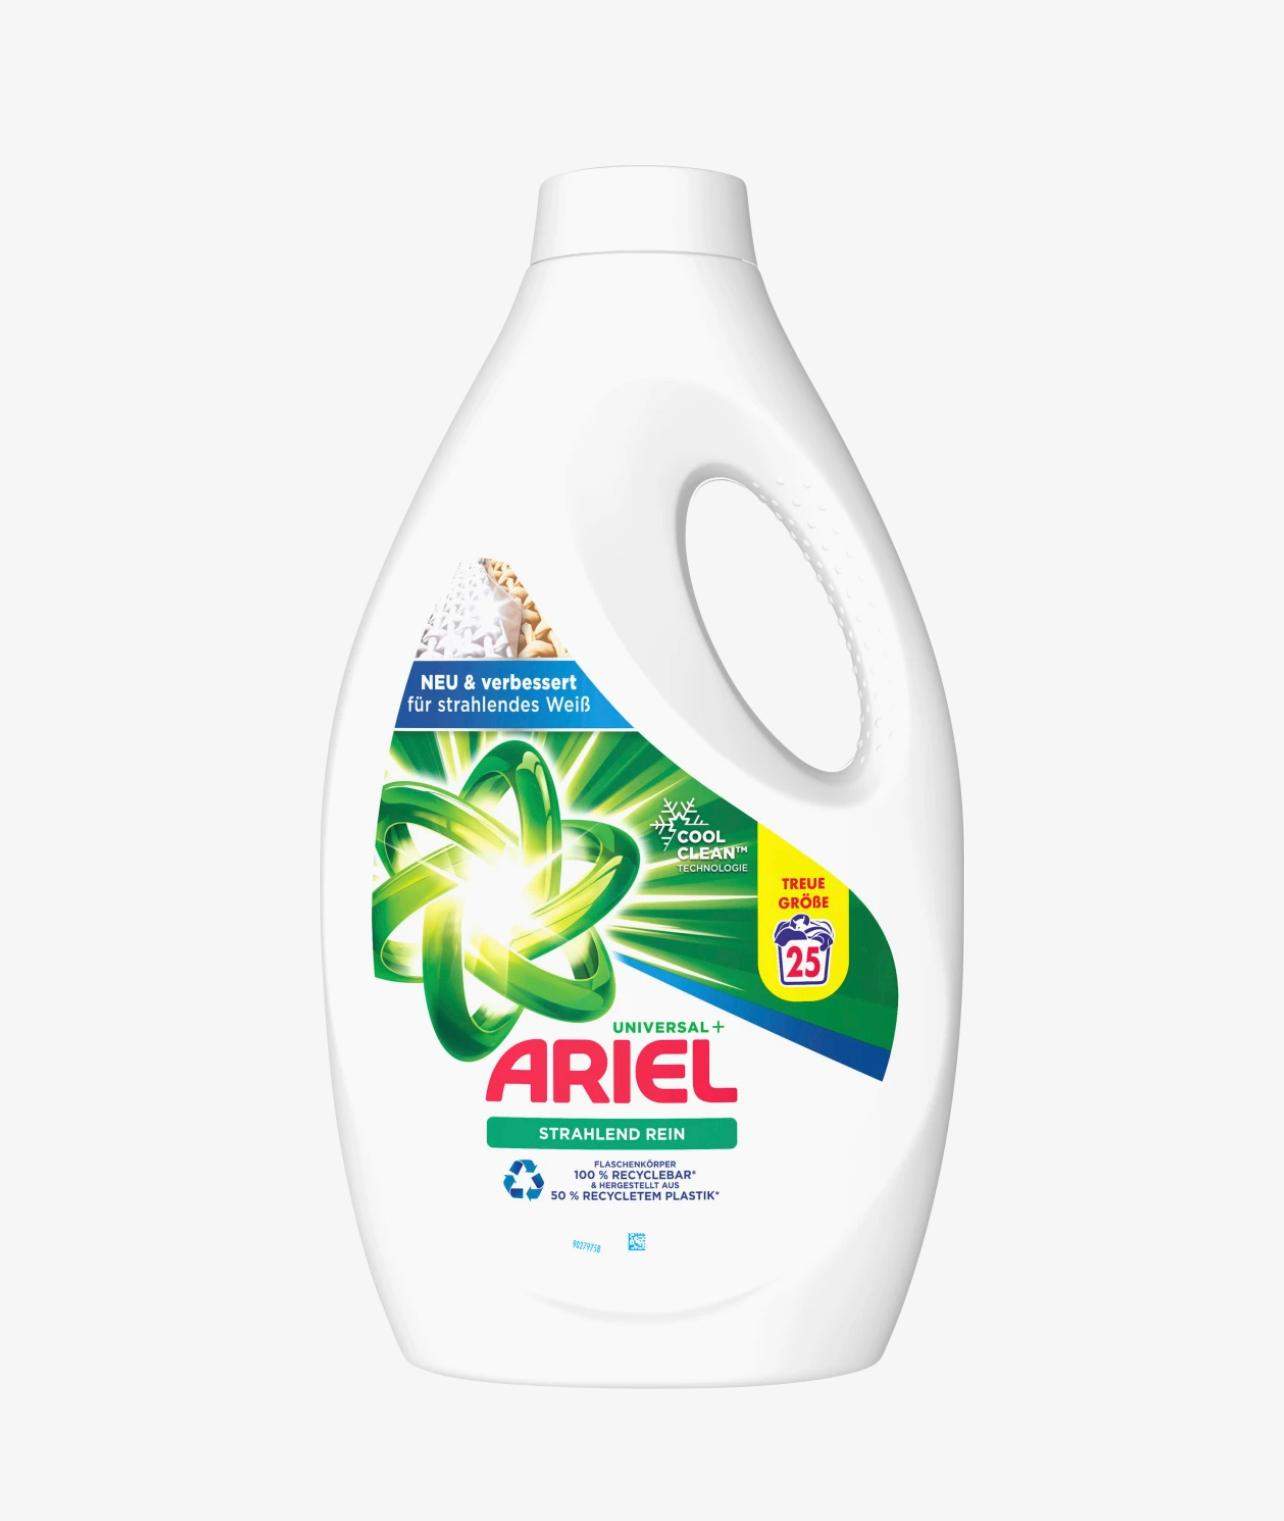 Was ist der Unterschied zwischen diesen zwei Ariel Produkten? (Chemie,  Hygiene, Waschmaschine)